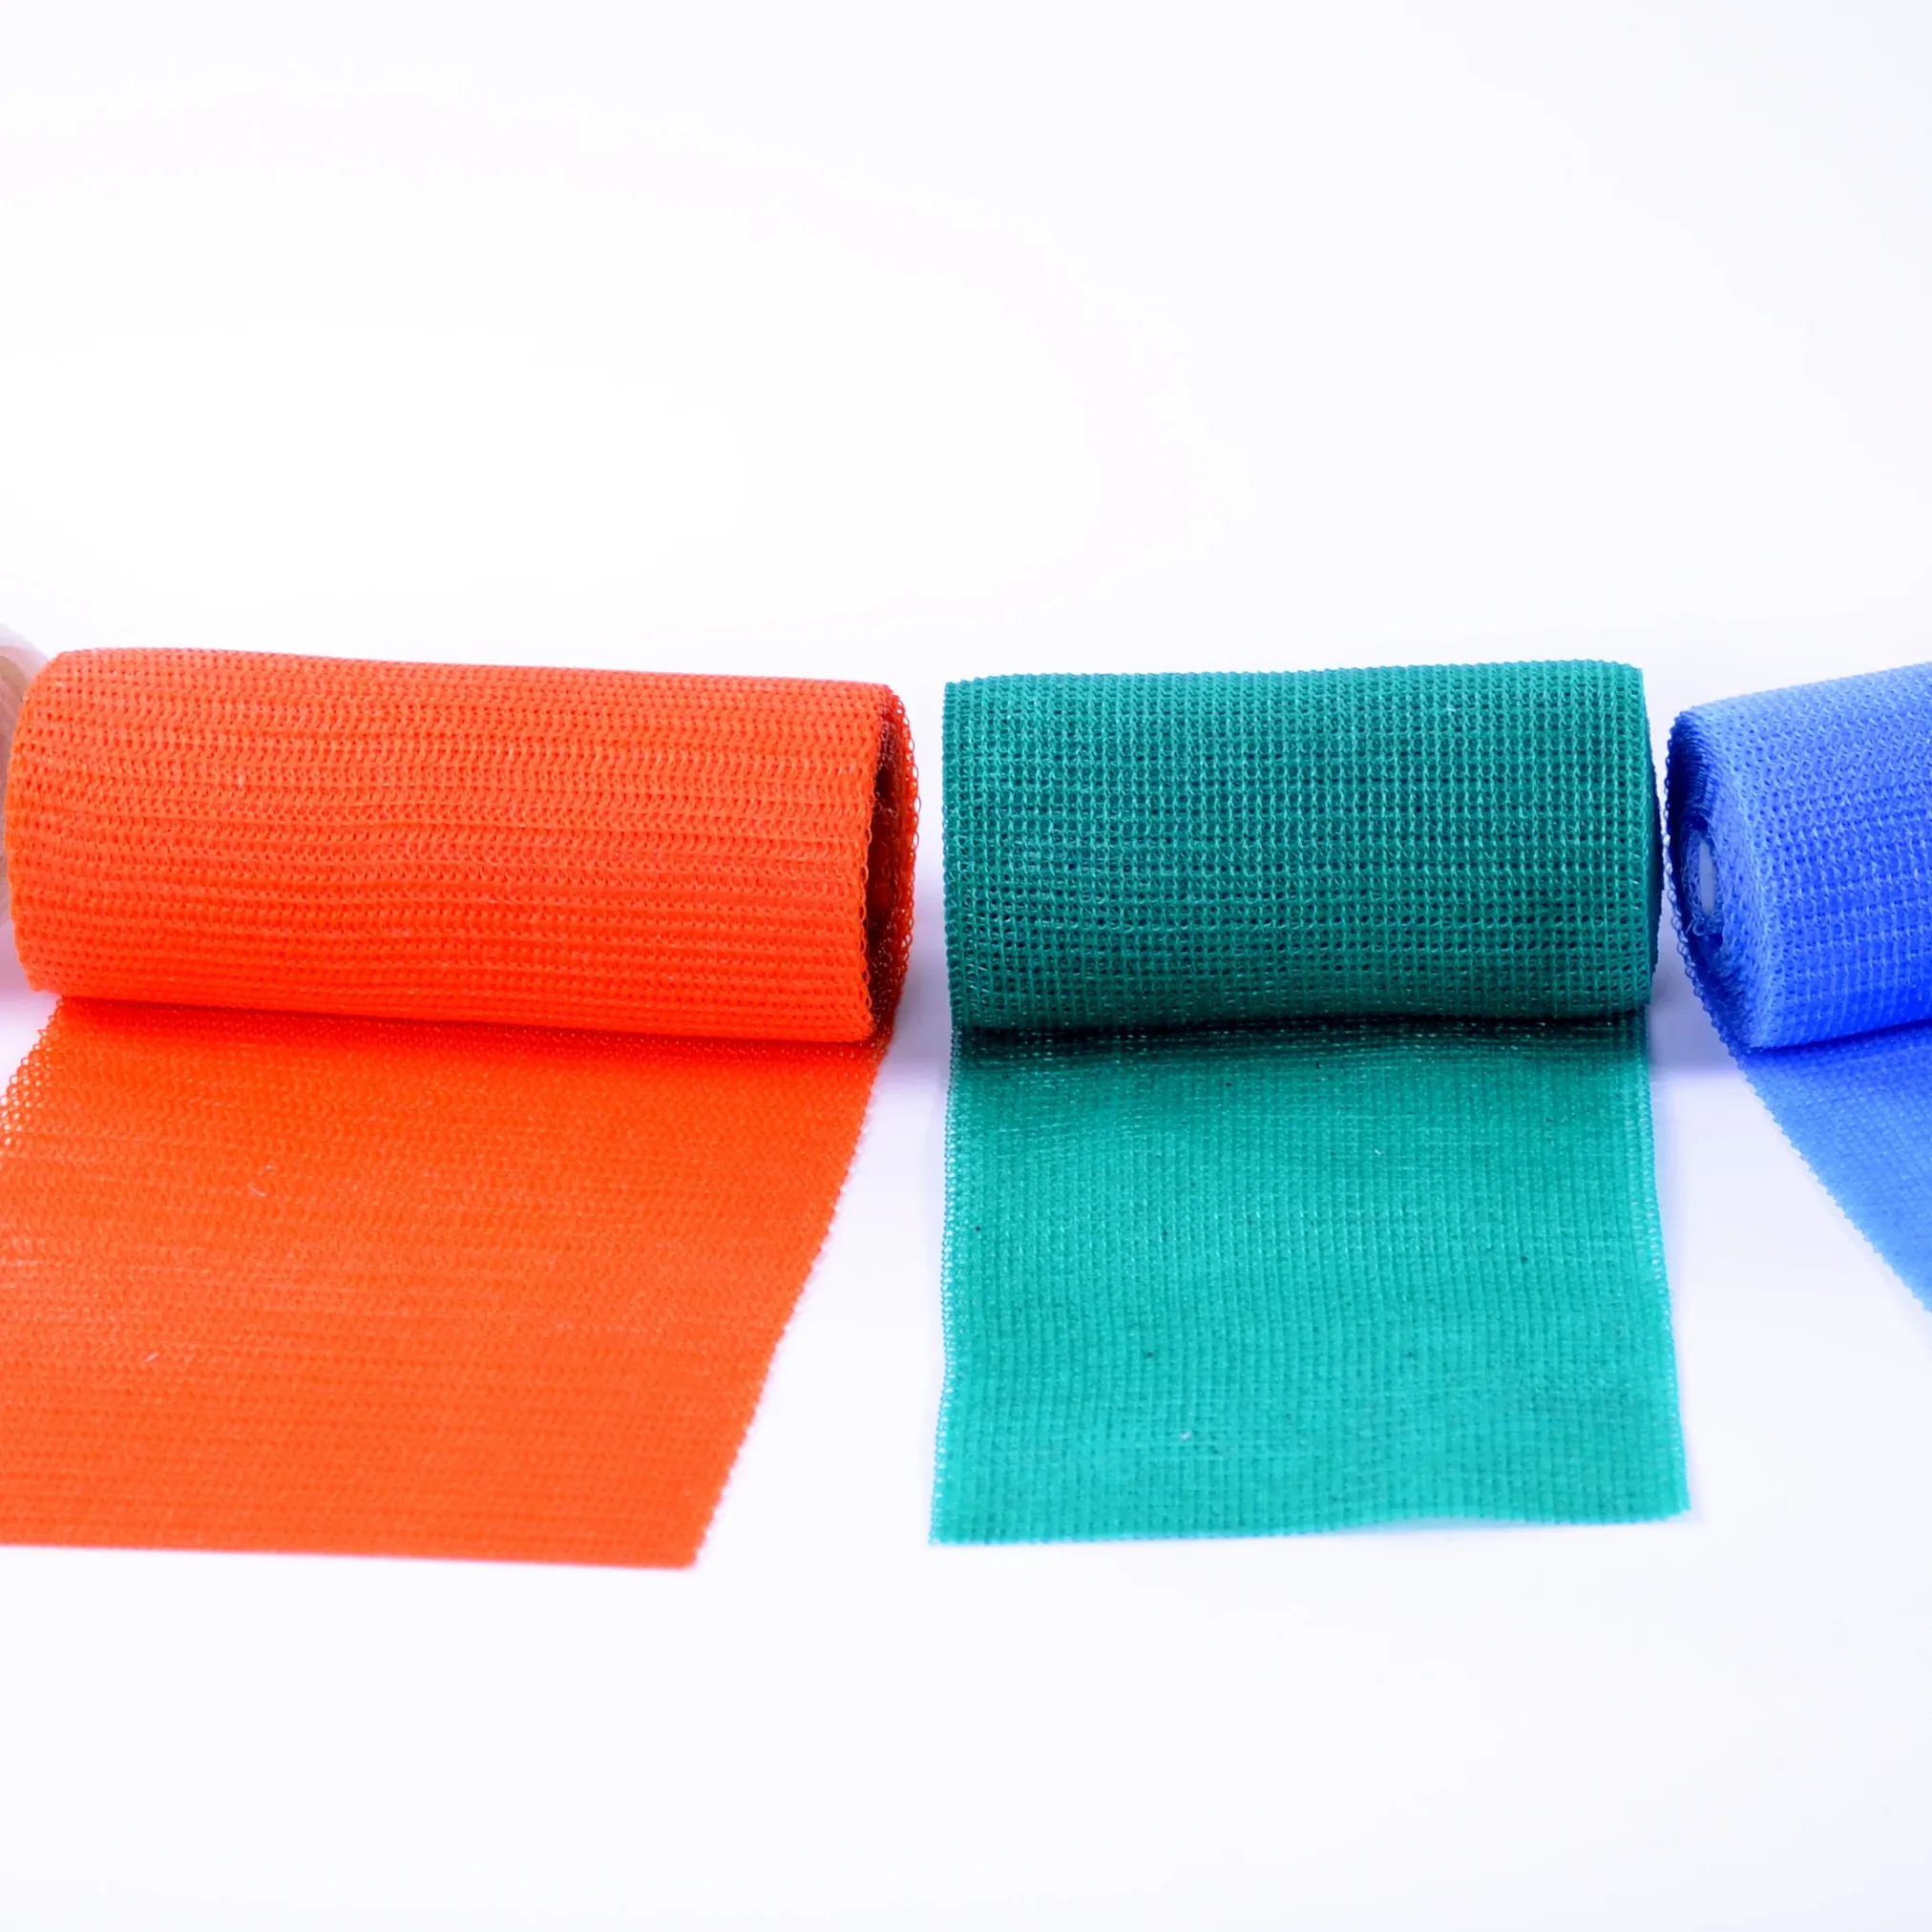 Ucuz klinik sarf malzemeleri Moldable kullanımı kolay kırılma kurtarma fiberglas Polyester sargı bandı